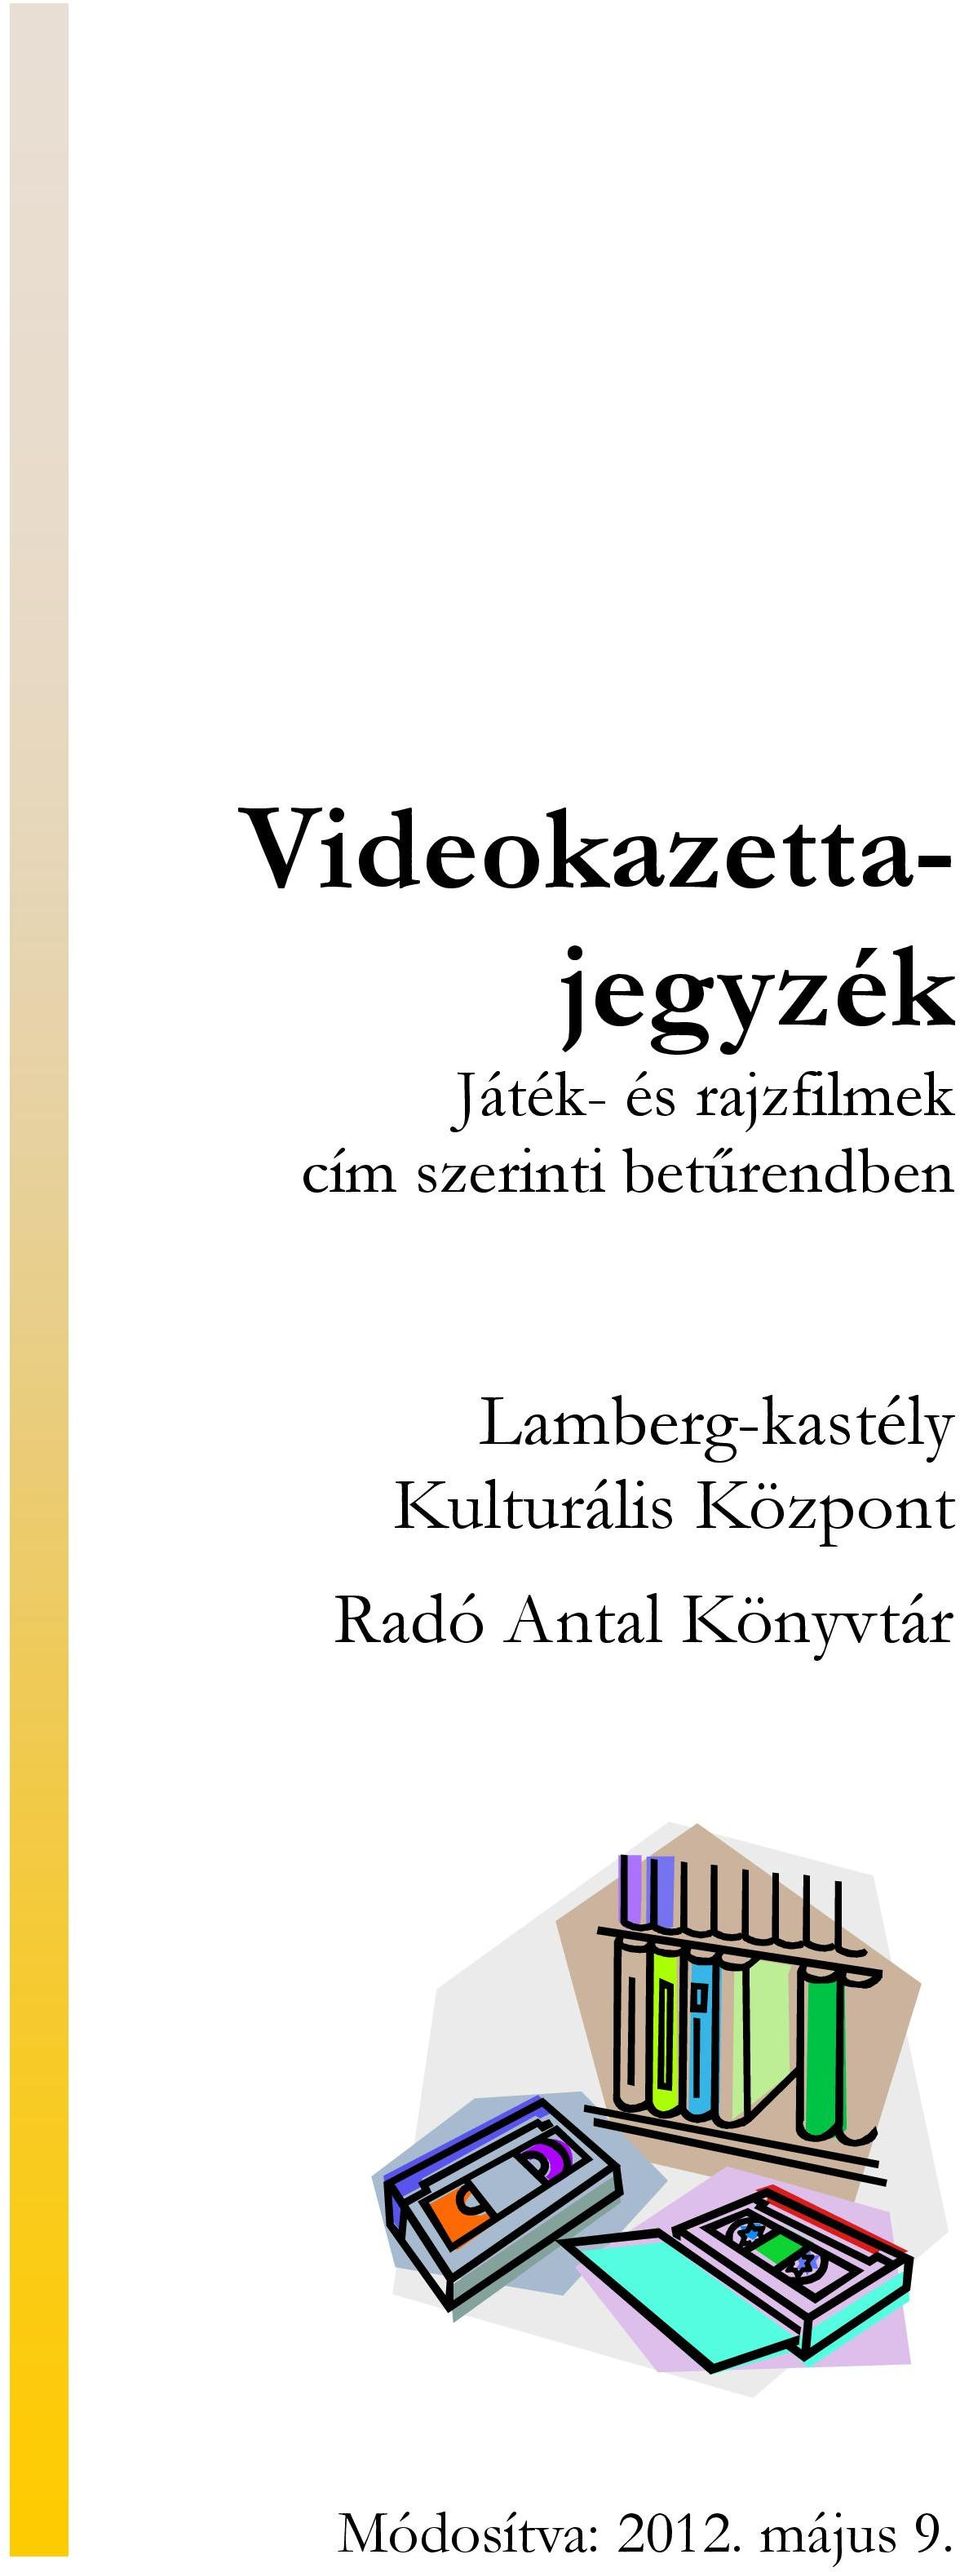 Videokazettajegyzék. Lamberg-kastély Kulturális Központ Radó Antal  Könyvtár. Játék- és rajzfilmek cím szerinti betűrendben. Módosítva: május  9. - PDF Ingyenes letöltés